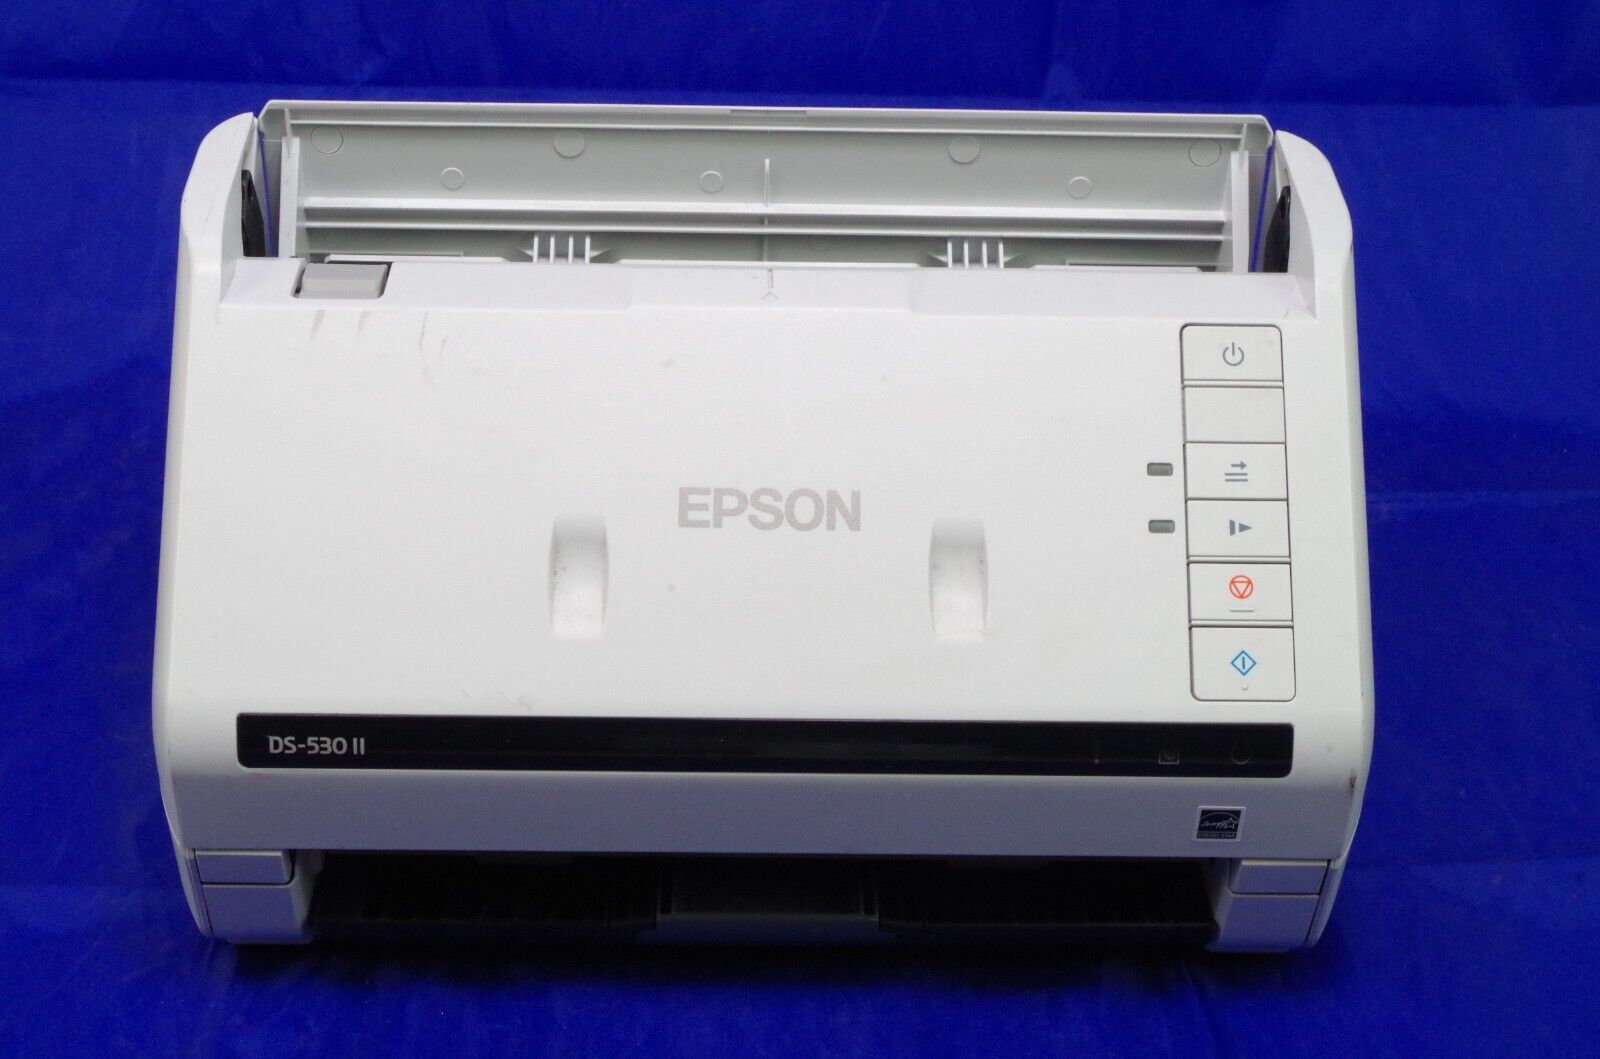 Epson DS-530 II Color Duplex Document Scanner AS IS READ DESCRIPTION